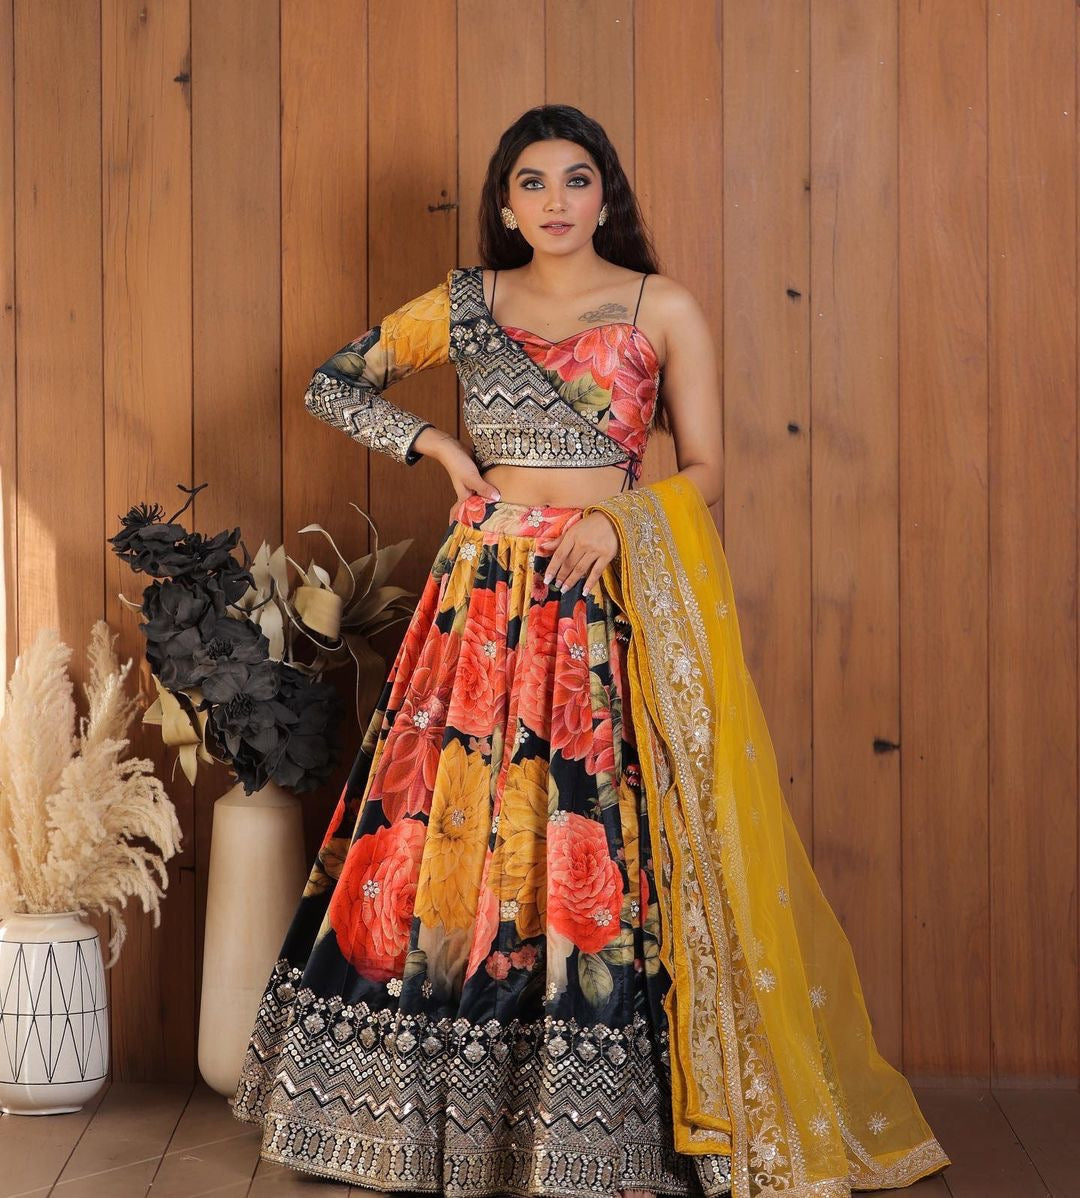 Shanaya Kapoor in Rahul Mishra lehenga serves the perfect bridesmaid look  for the shaadi season. See pics inside | Hindustan Times